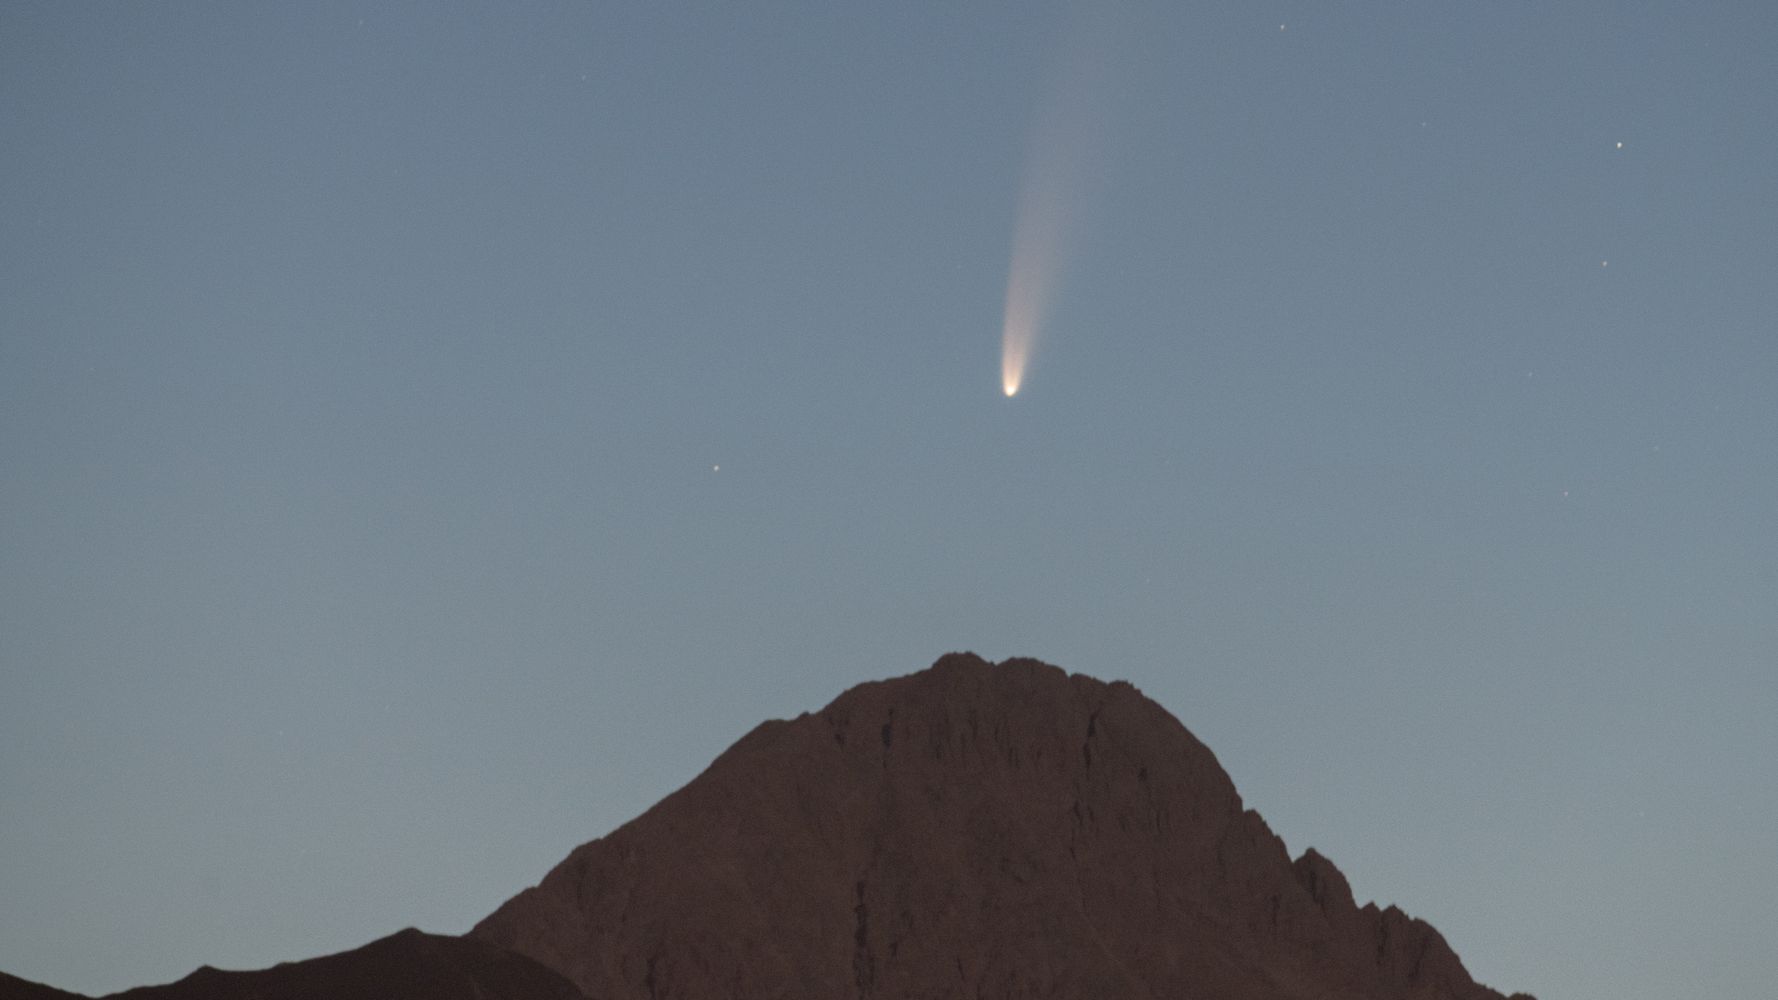 Comet news - Comet Section